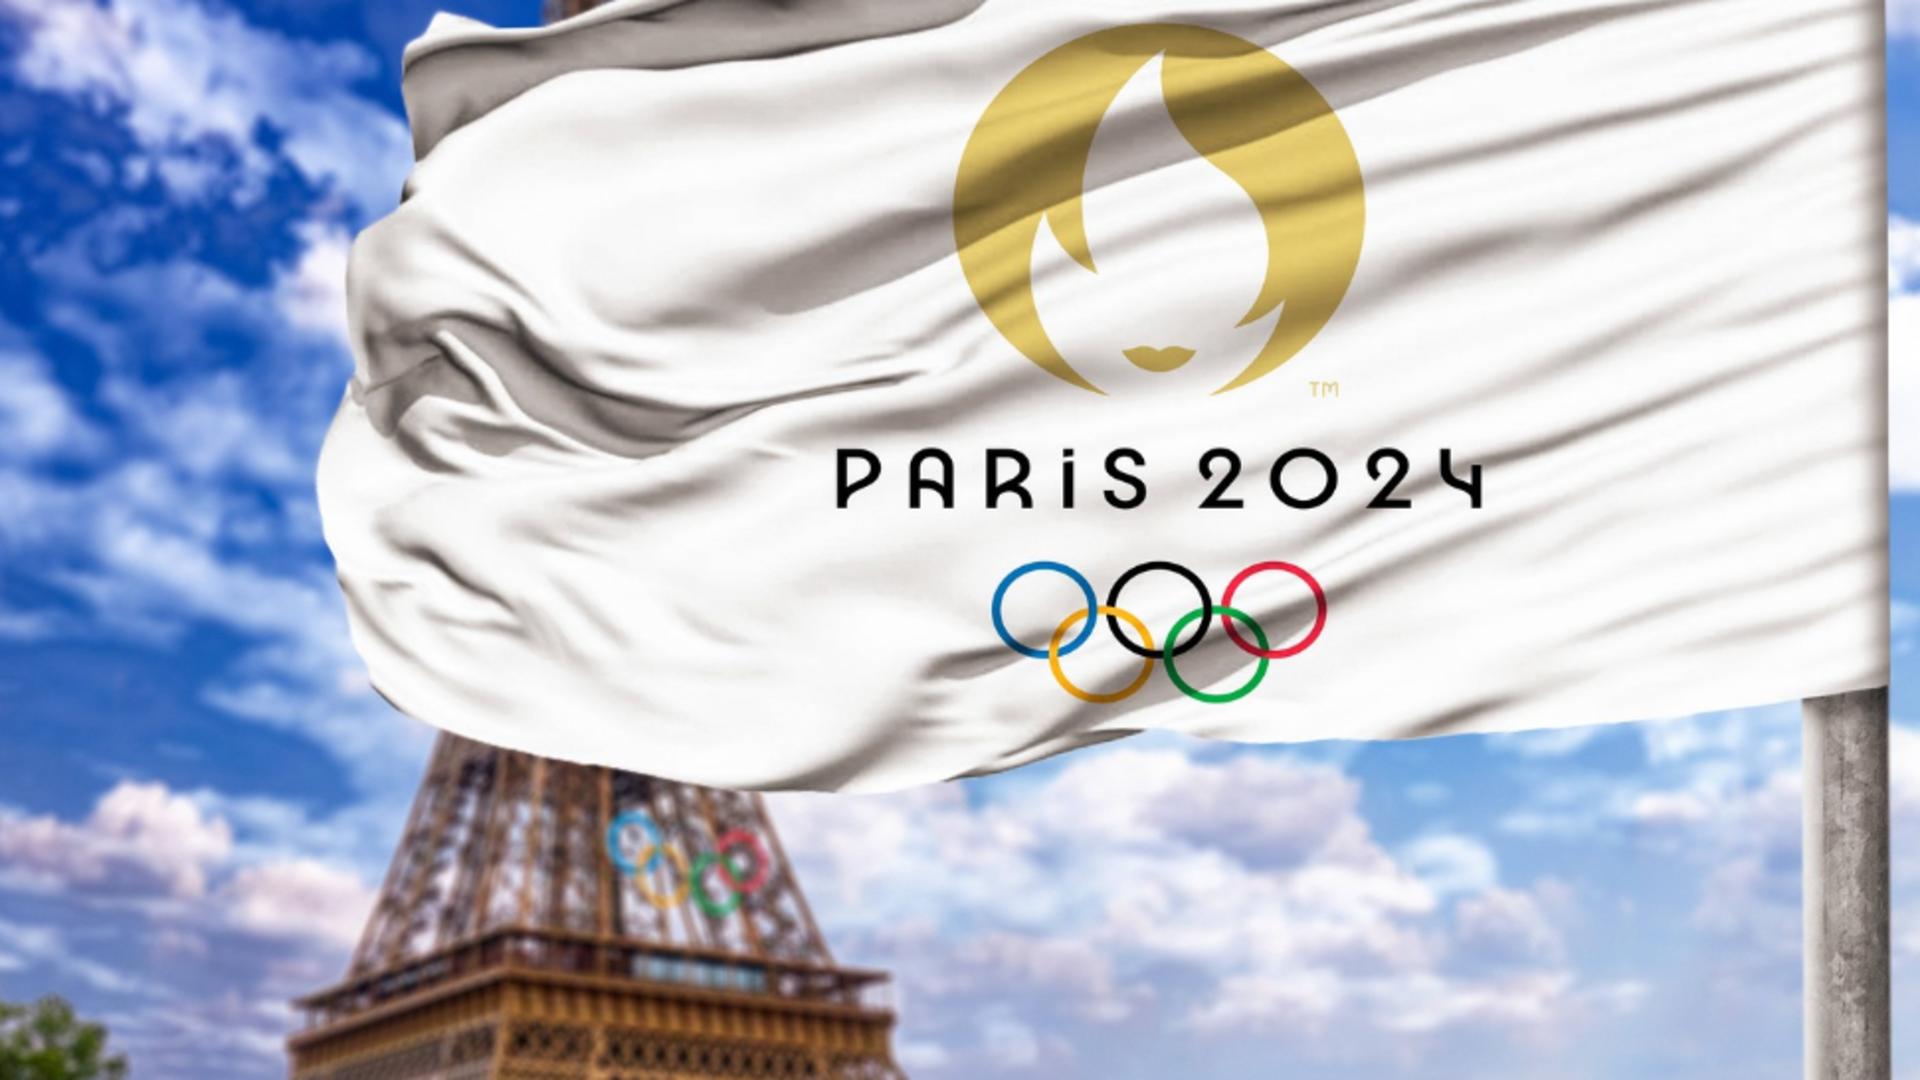 A început parada de deschidere a Jocurilor Olimpice Paris 2024 LIVE